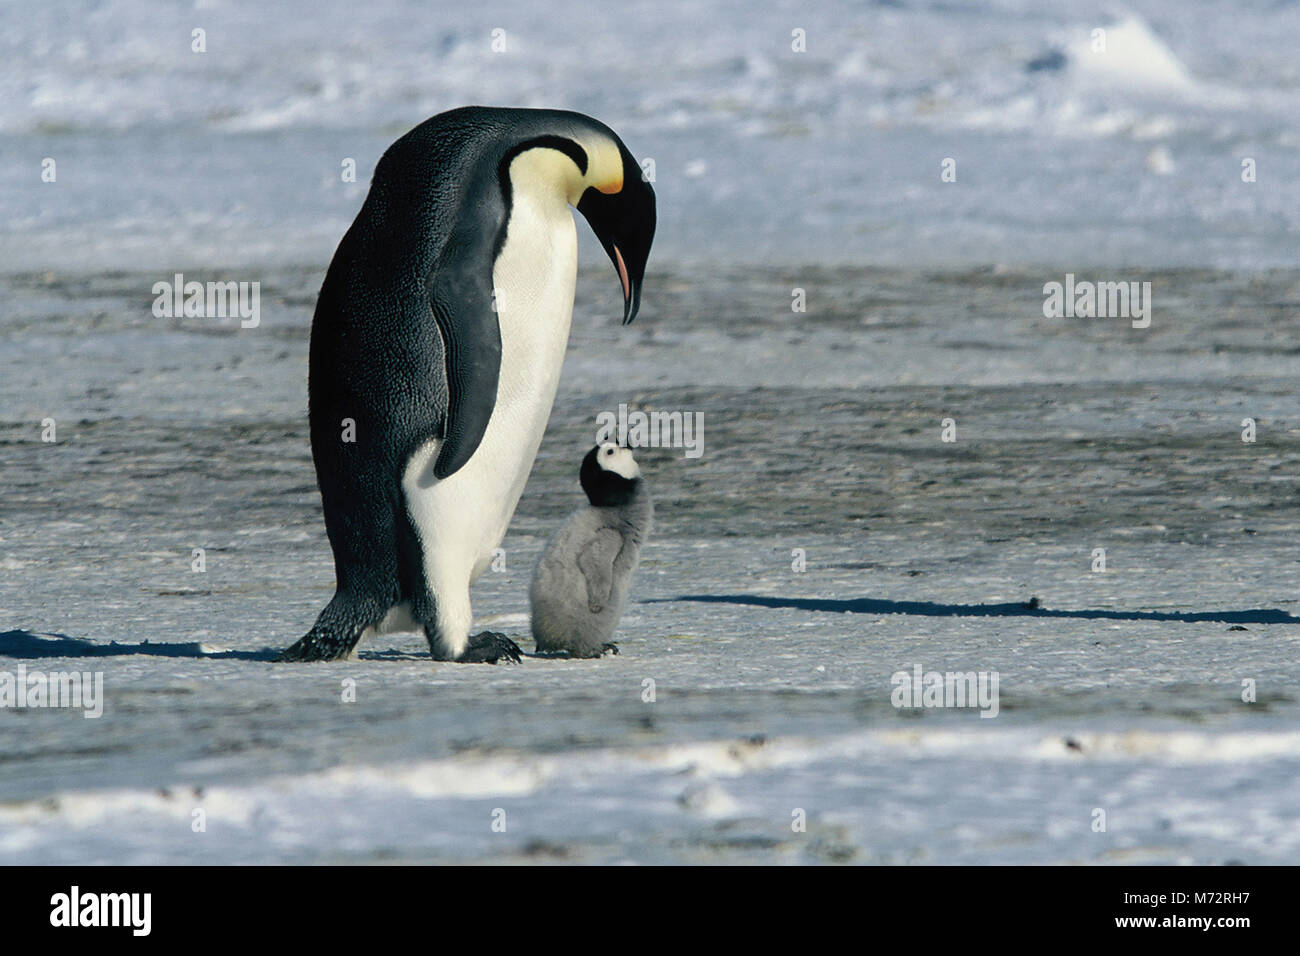 DIE REISE DER PINGUINE aka. La marche de l'empereur, Frankreich 2004 Luc Jacquet Tier-Dokumentation über den außergewöhnlichen Lebenszyklus der Pinguine in der Antarktis. Stock Photo